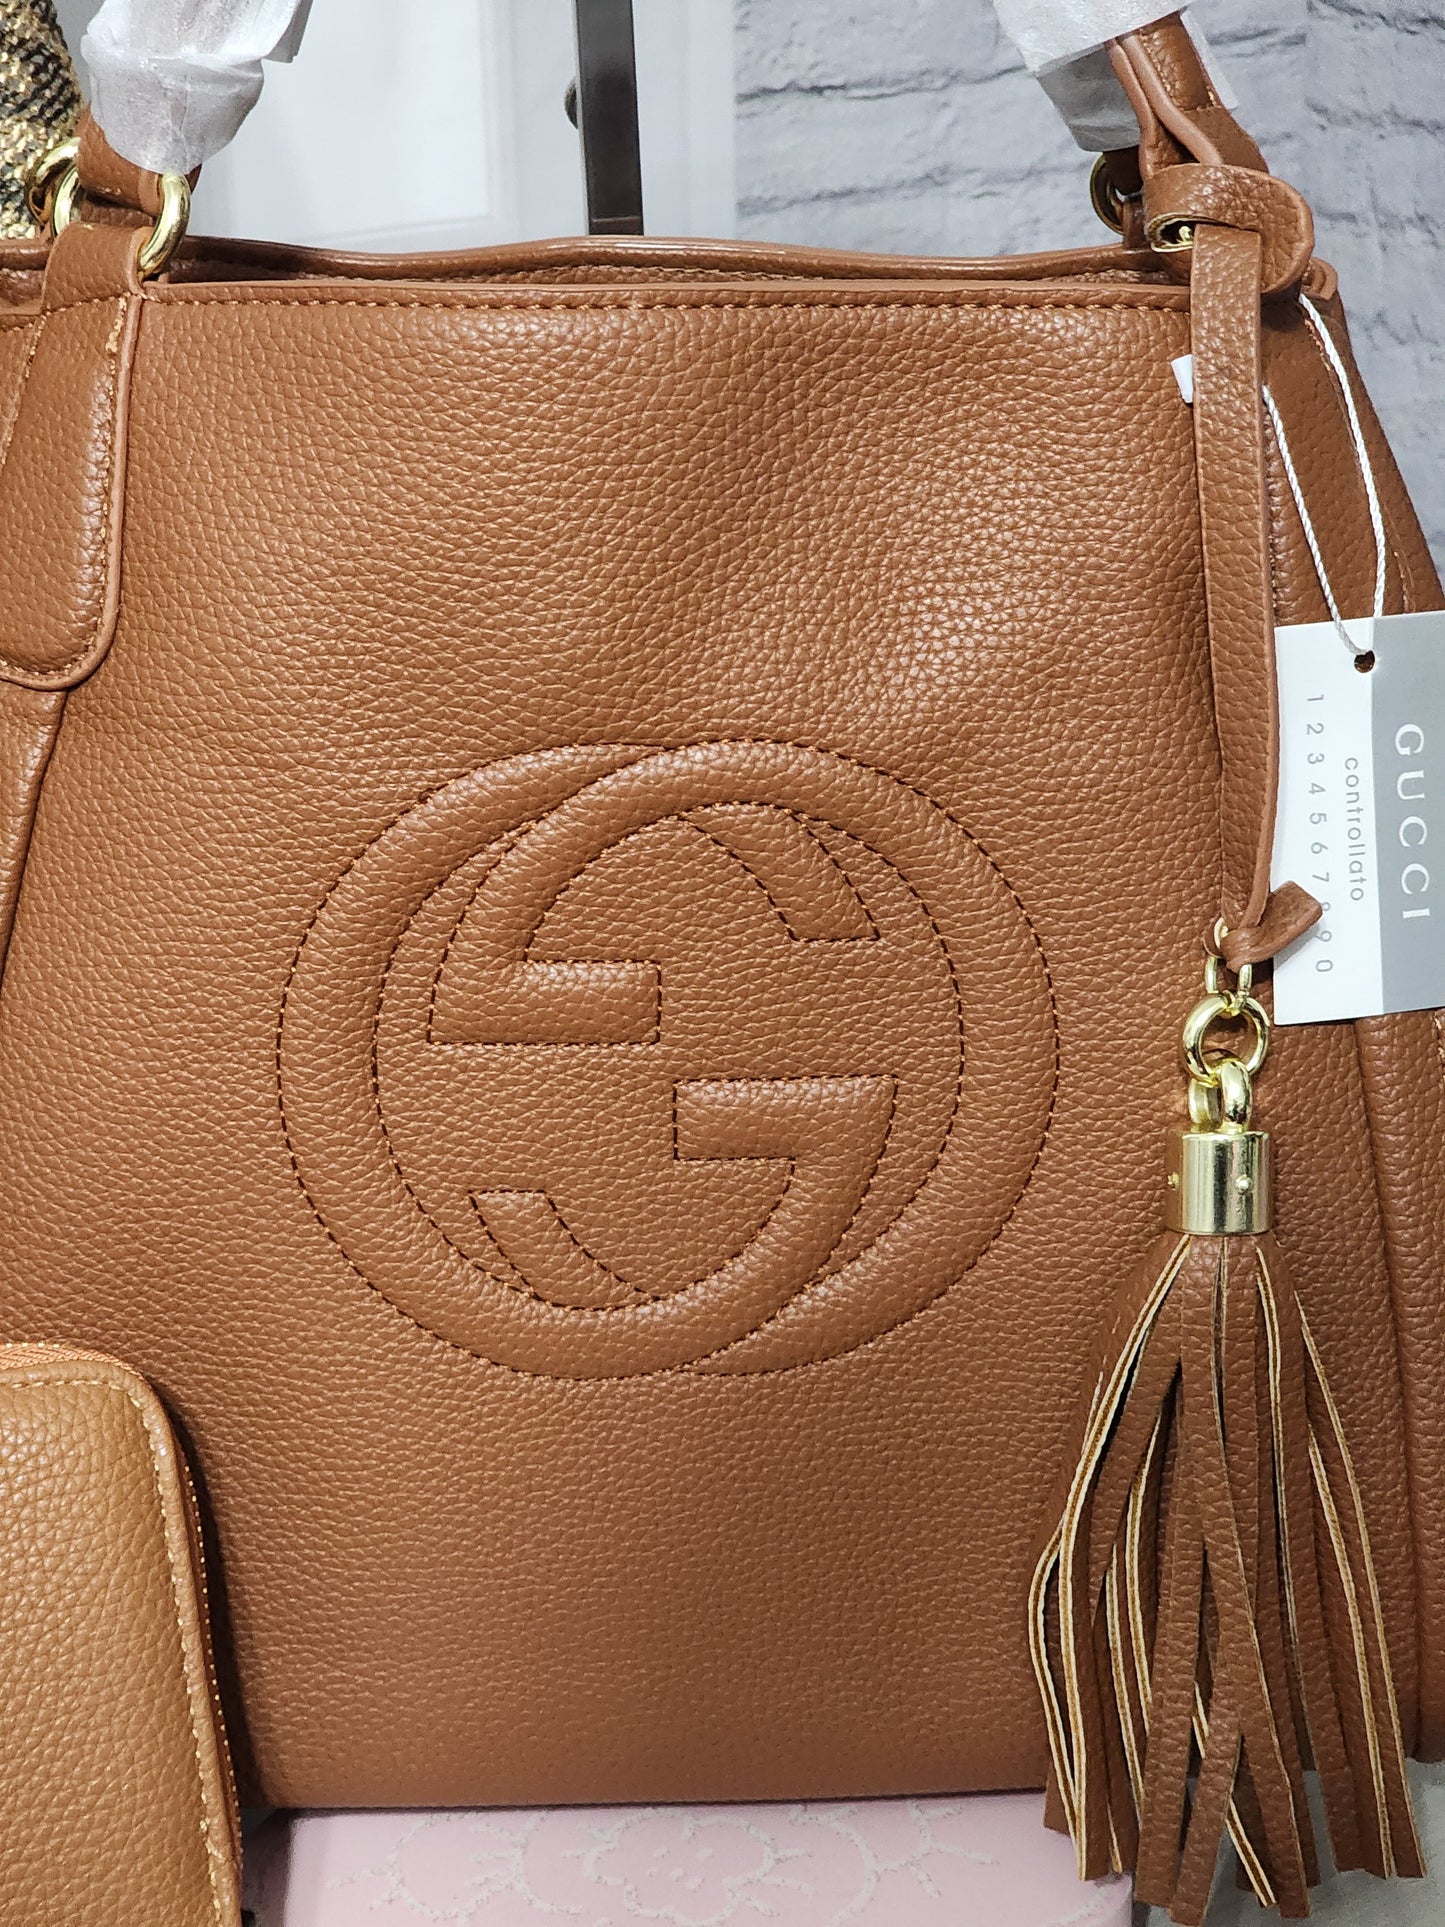 Inspired Camel Color Leather Handbag or Wallet